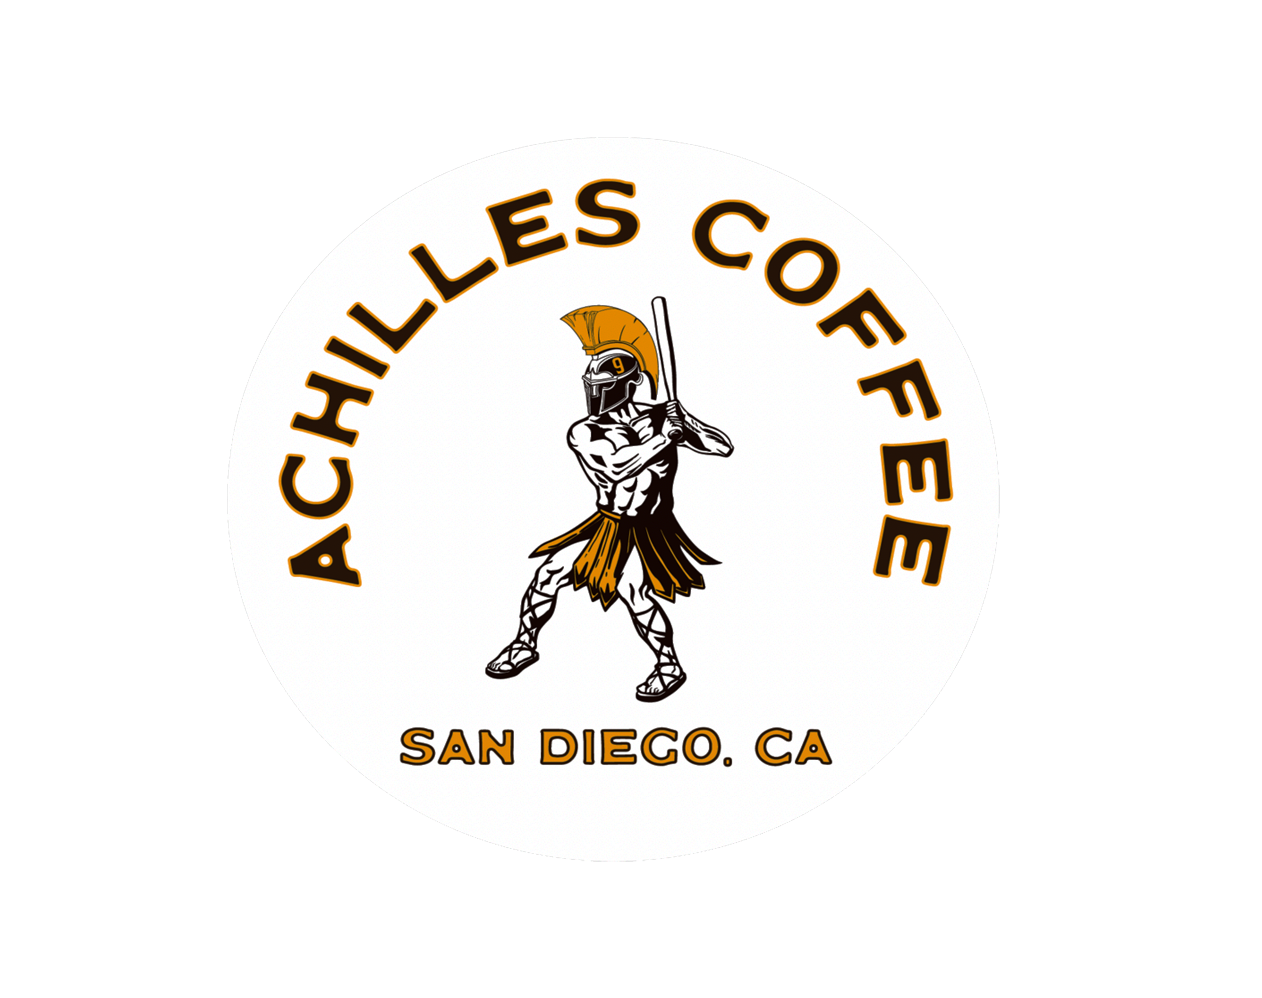 Achilles Coffee #9 Jake Cronenworth Sticker and T Shirt